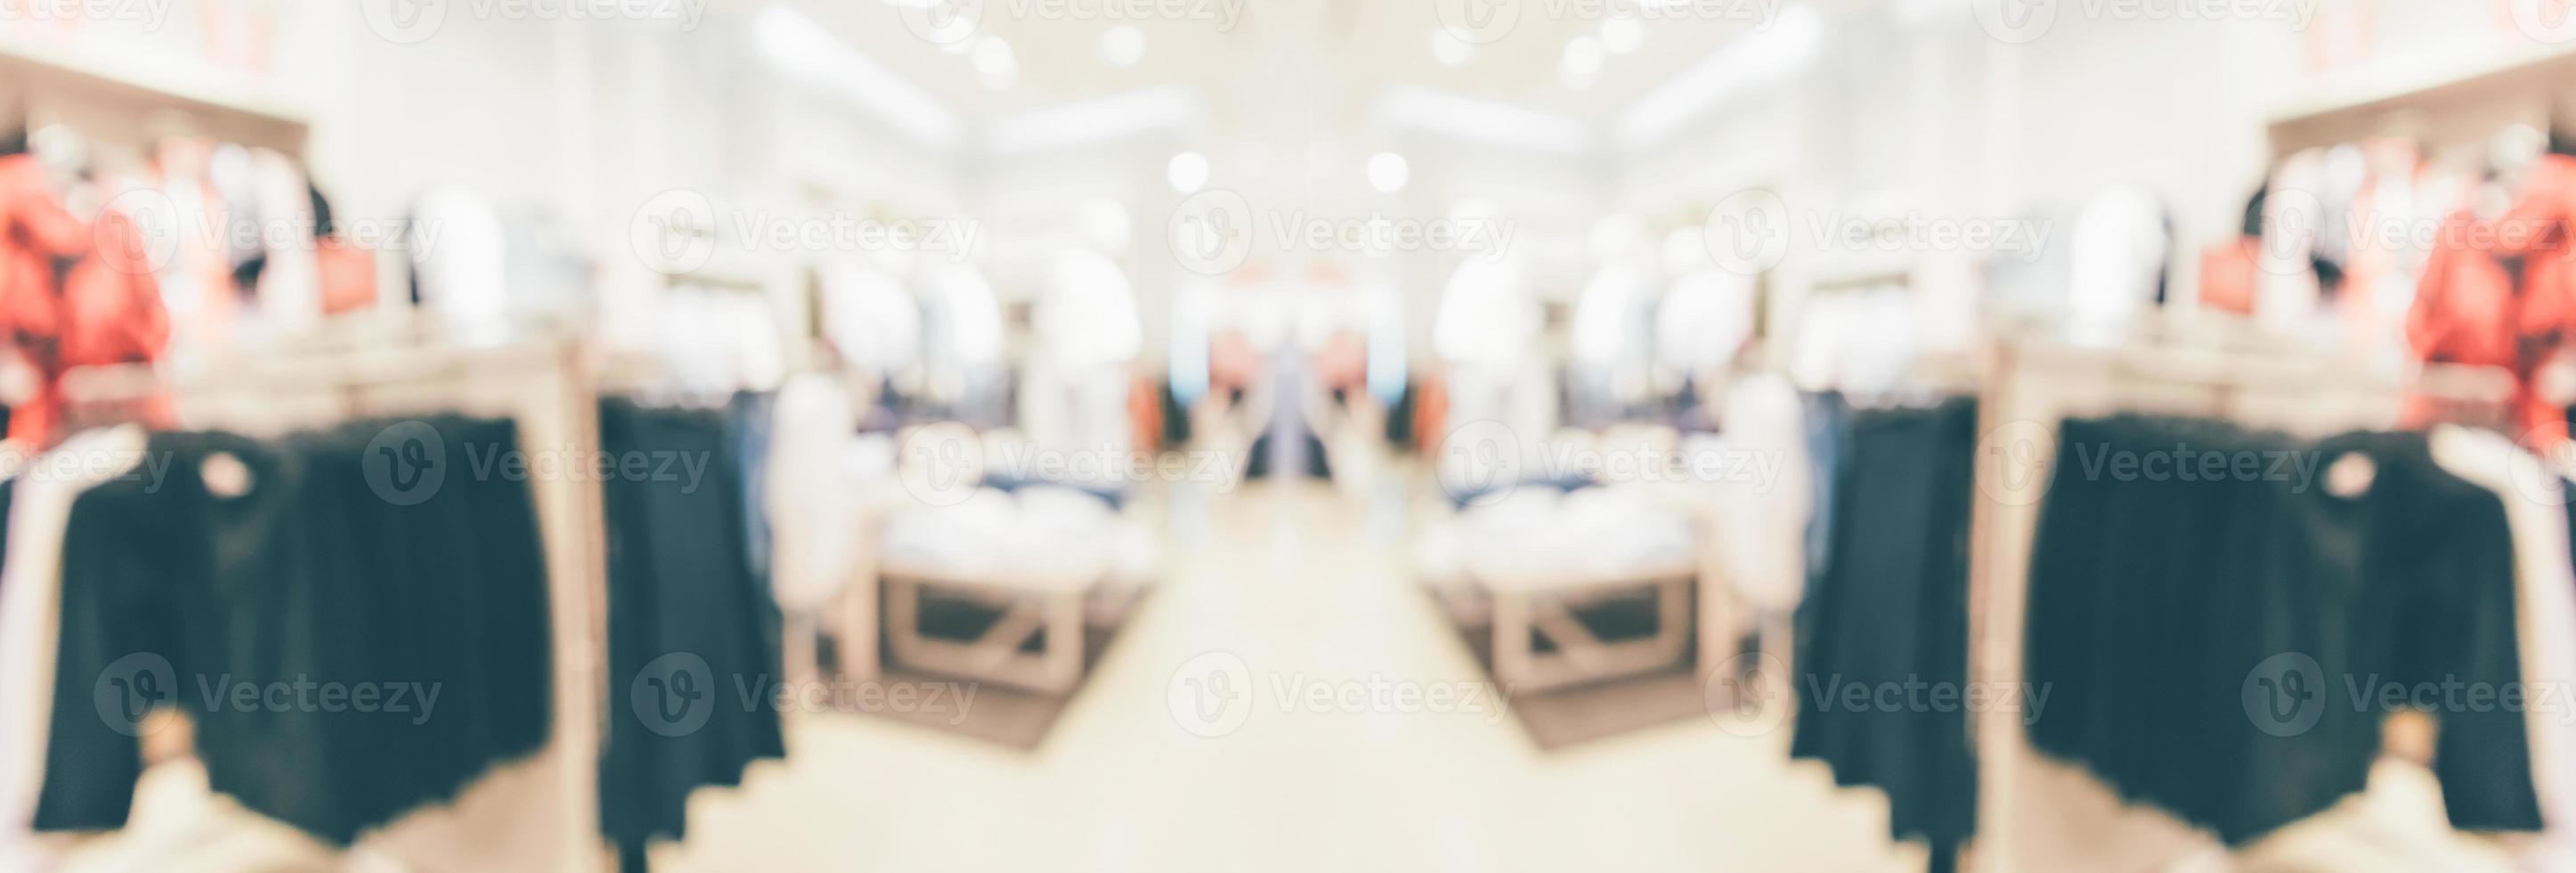 abstrato desfocar roupas boutique exibir interior do fundo do shopping foto